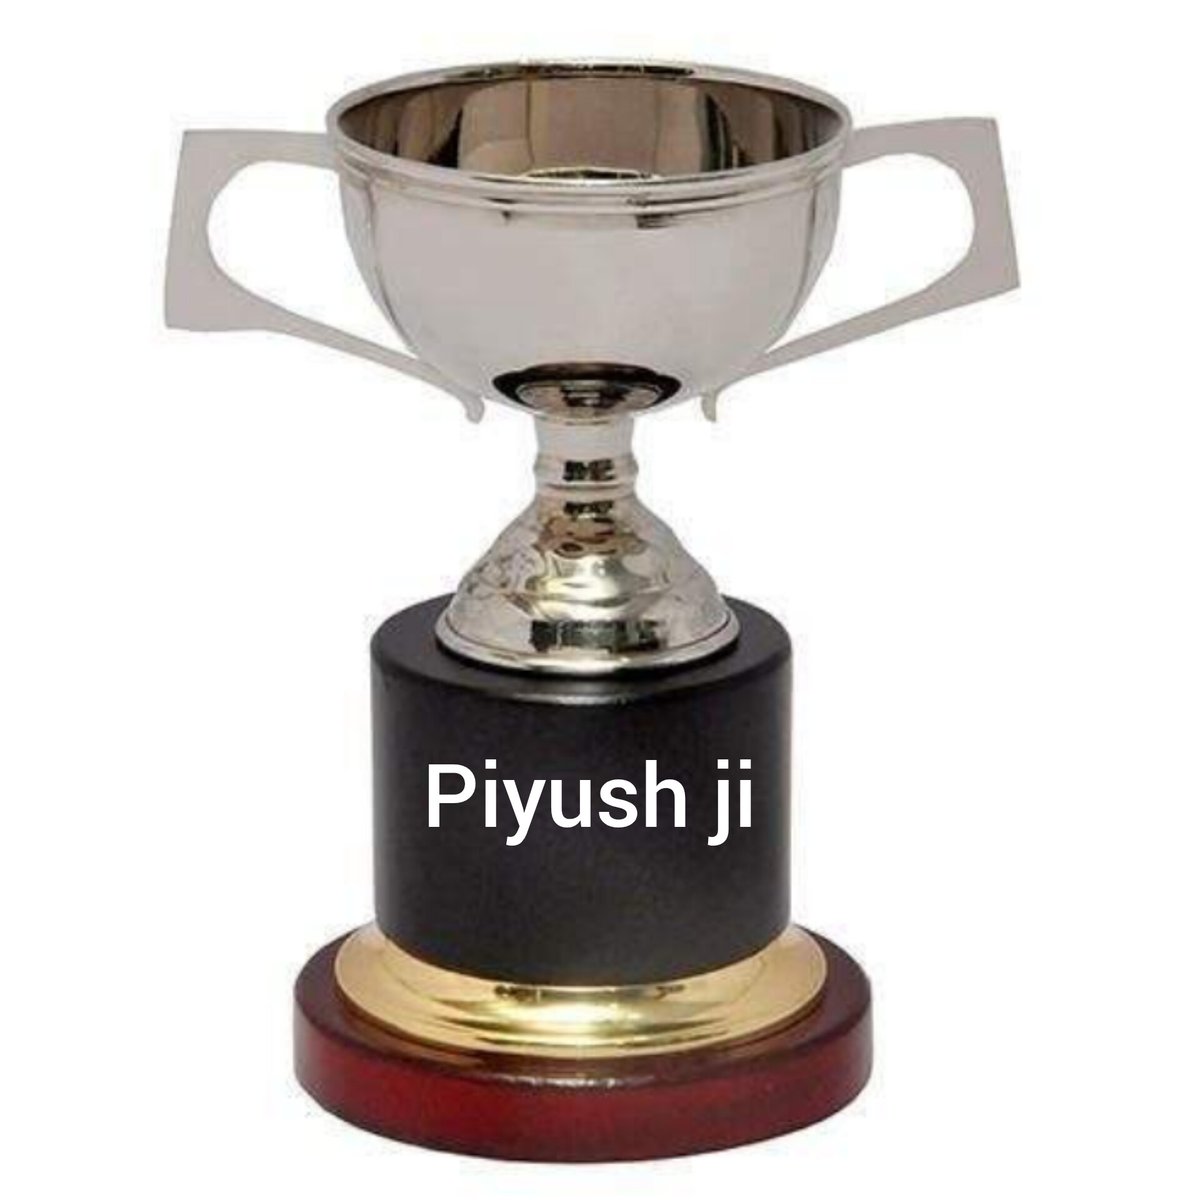 🌹वाह लाजबाब हो तुम...... मे🌹 आज के Silver medal Winner @Tweet_on_trust0 Ji हैँ 🌹 Piyush जो को की खूबसूरत रचना के लिए बधाई 🌹👌🌹 🌹🌹🌹🌹🌹🌹🌹🌹🌹🌹🌹